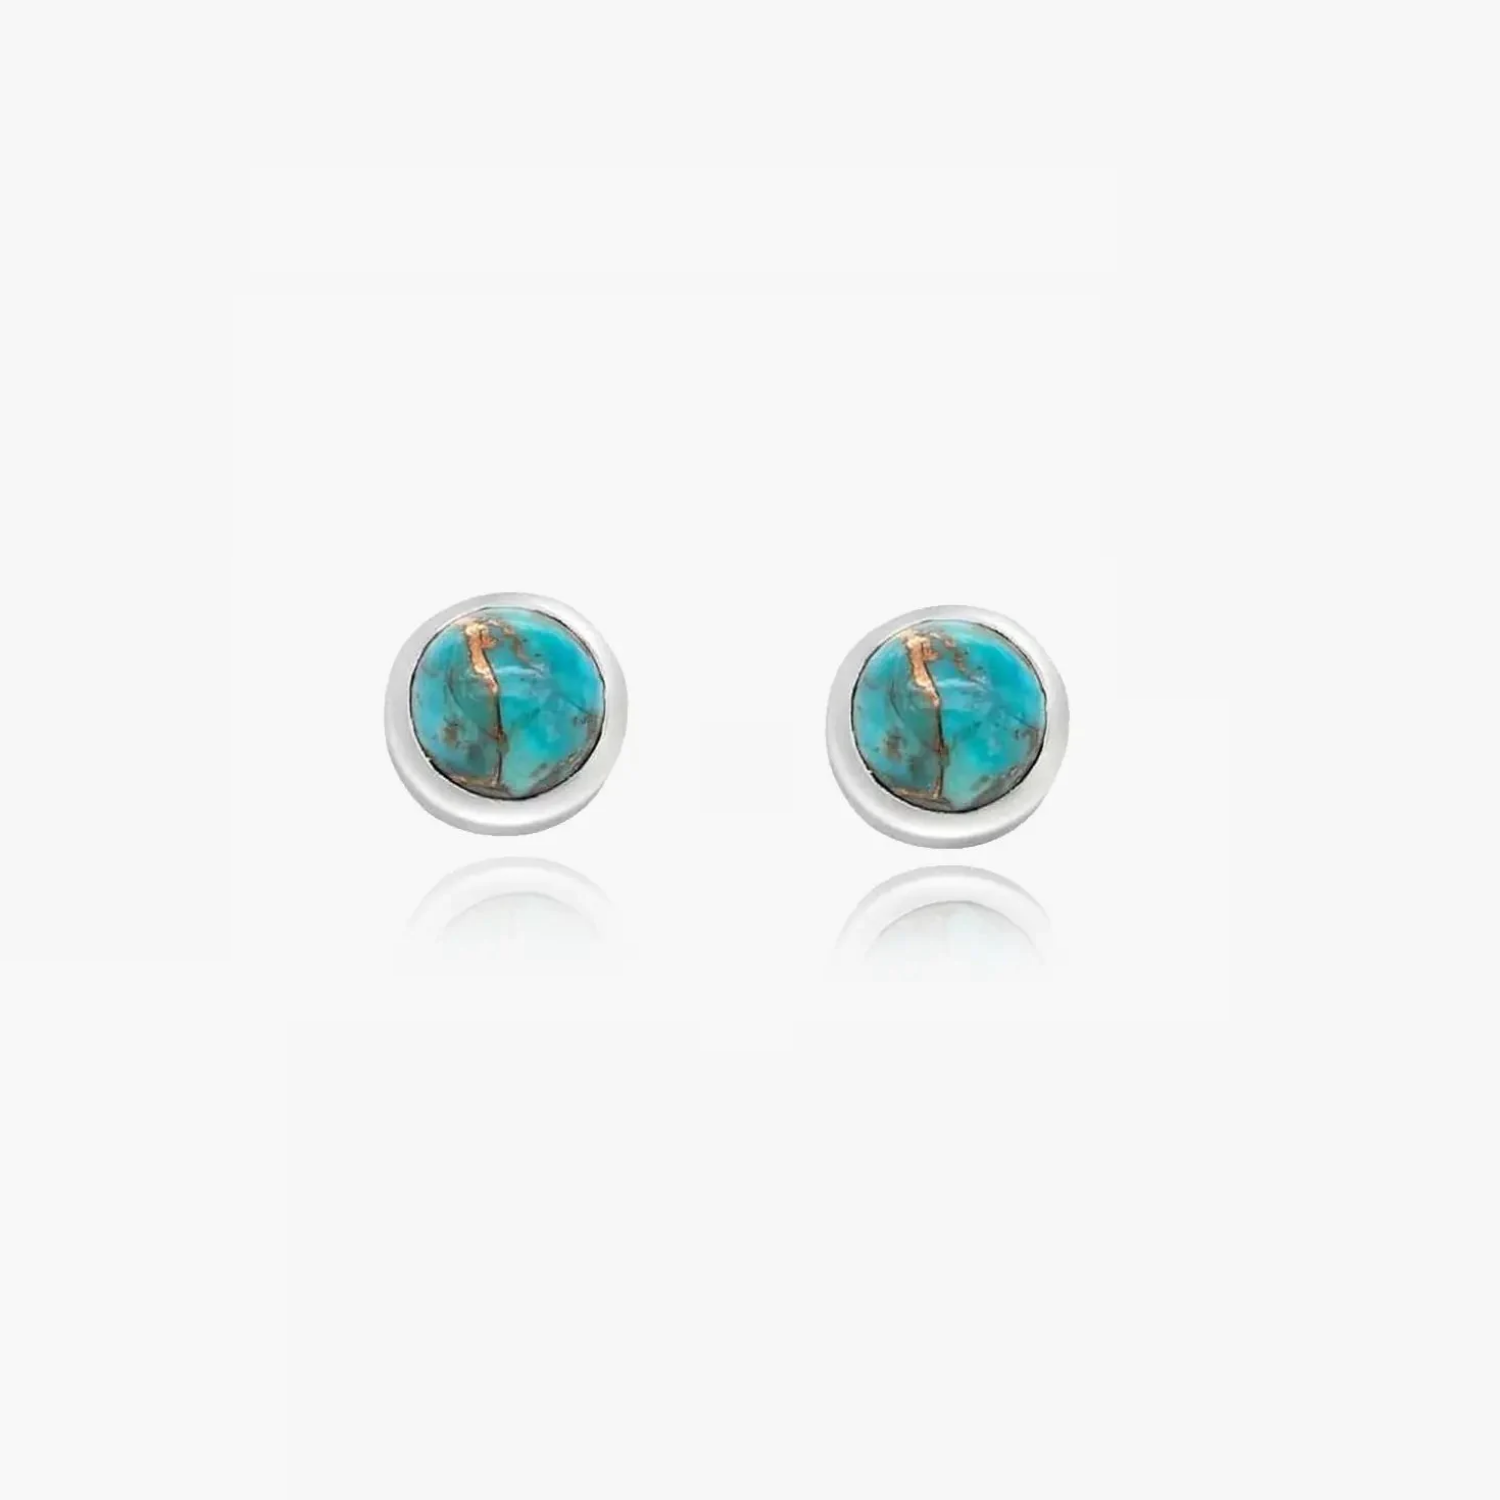 Kaylee silver earrings - Turquoise